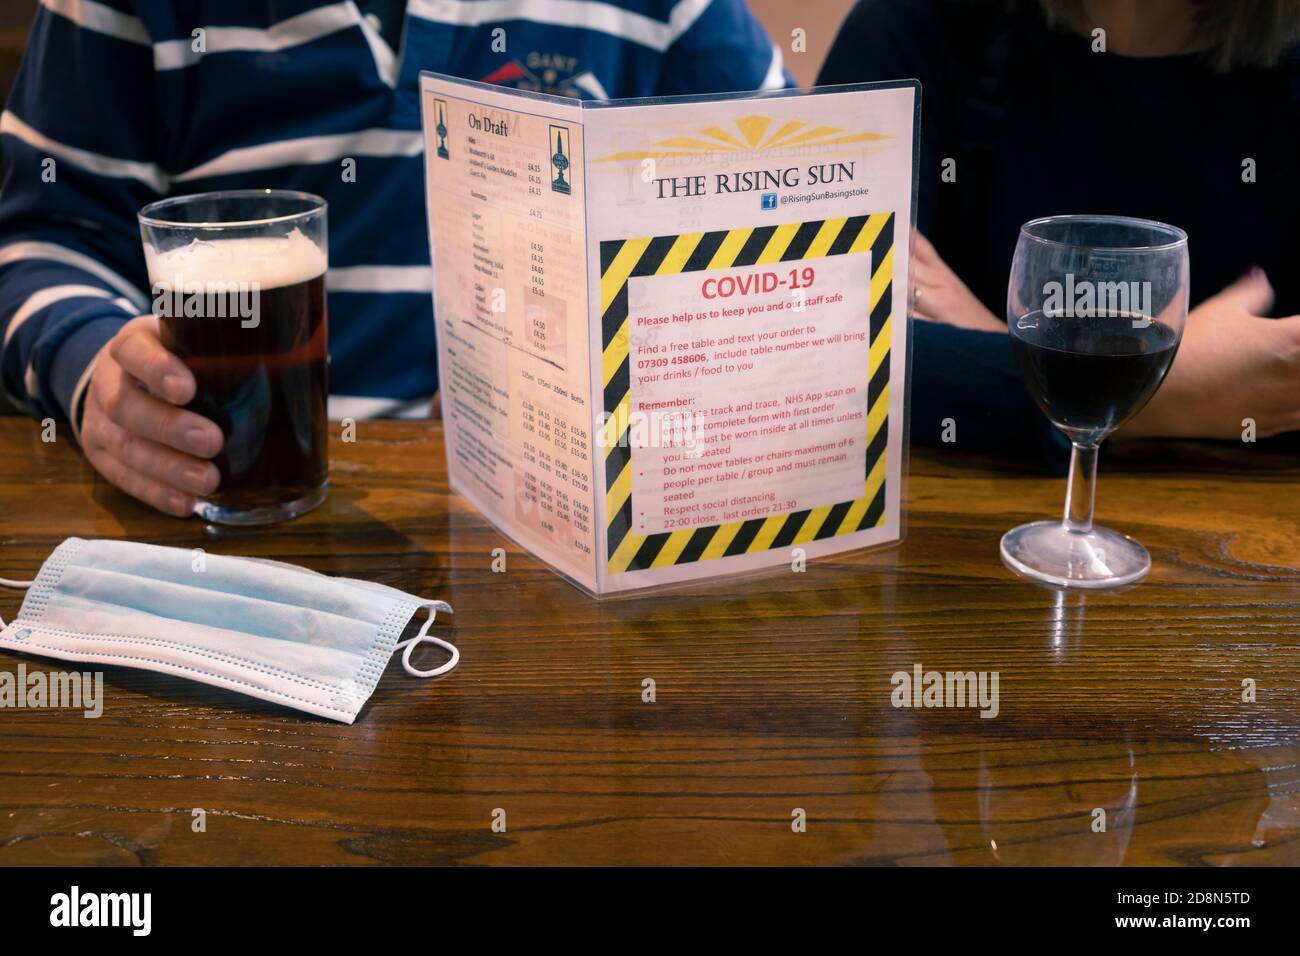 Un homme et une femme buvant dans un pub avec des règles et des restrictions Covid-19 coronavirus sur la table et un masque jetable. Basingstoke, Royaume-Uni Banque D'Images